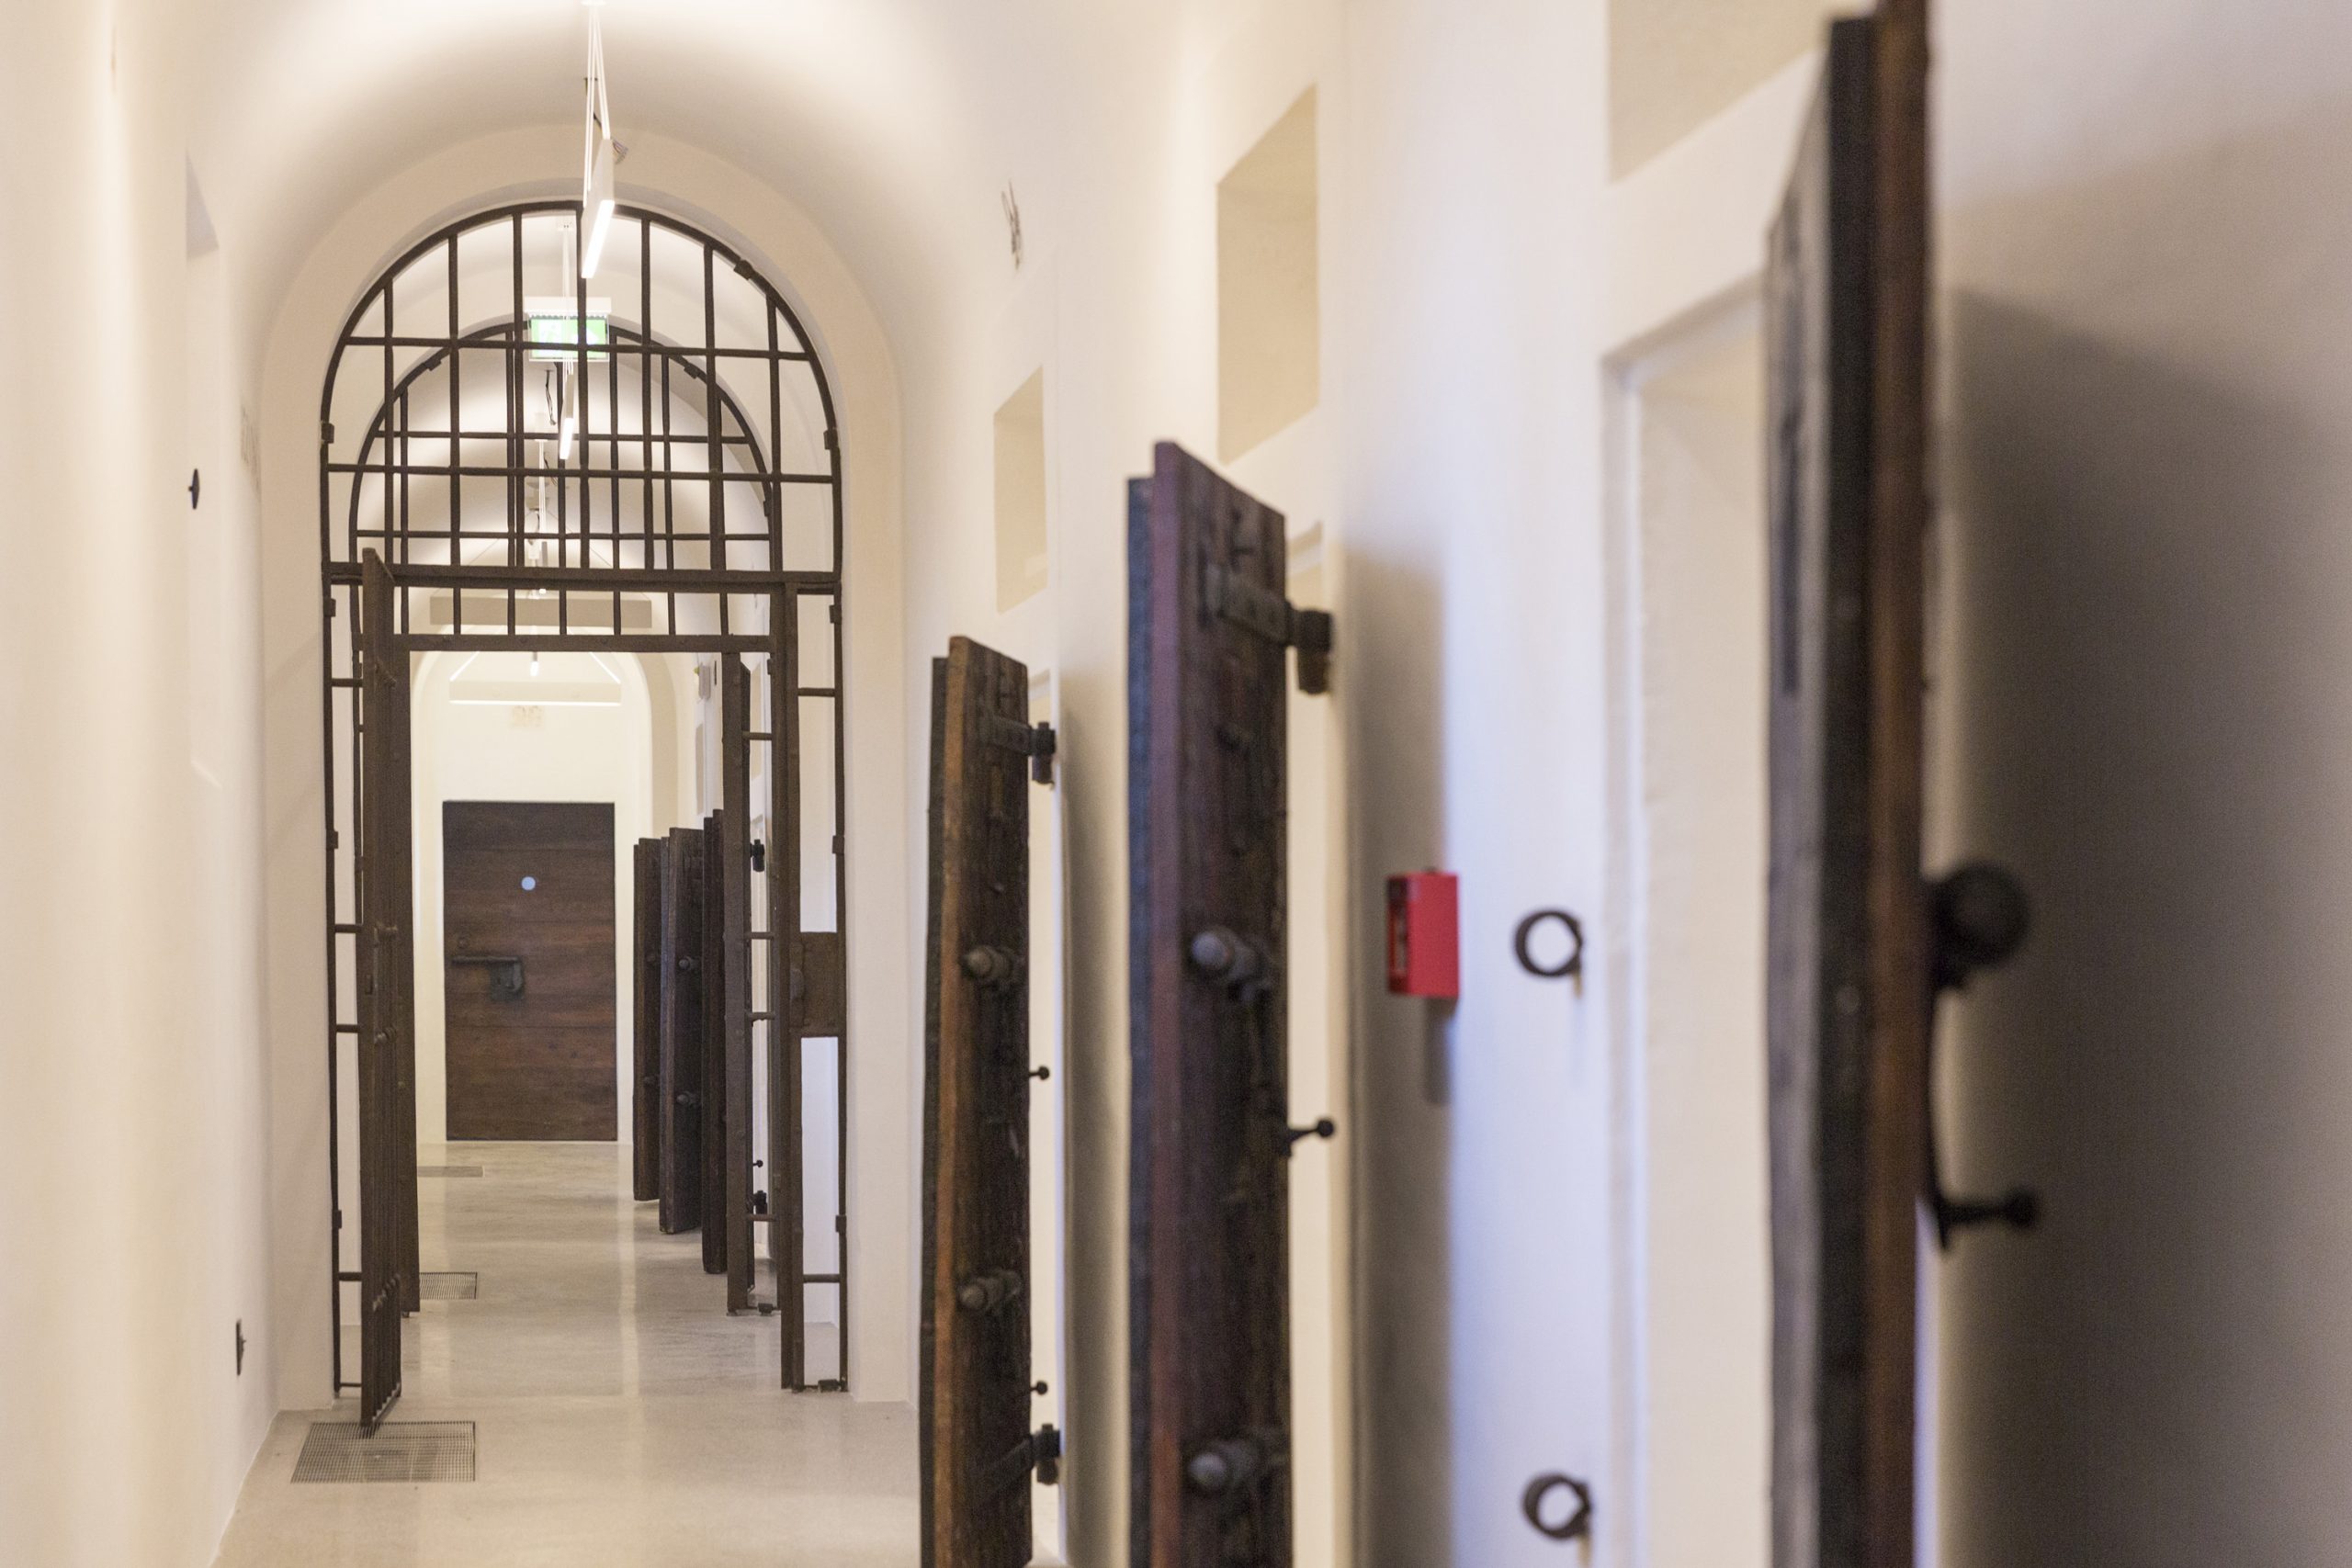 Gallerie delle Prigioni, the exhibition venue of Fondazione Imago Mundi in Treviso